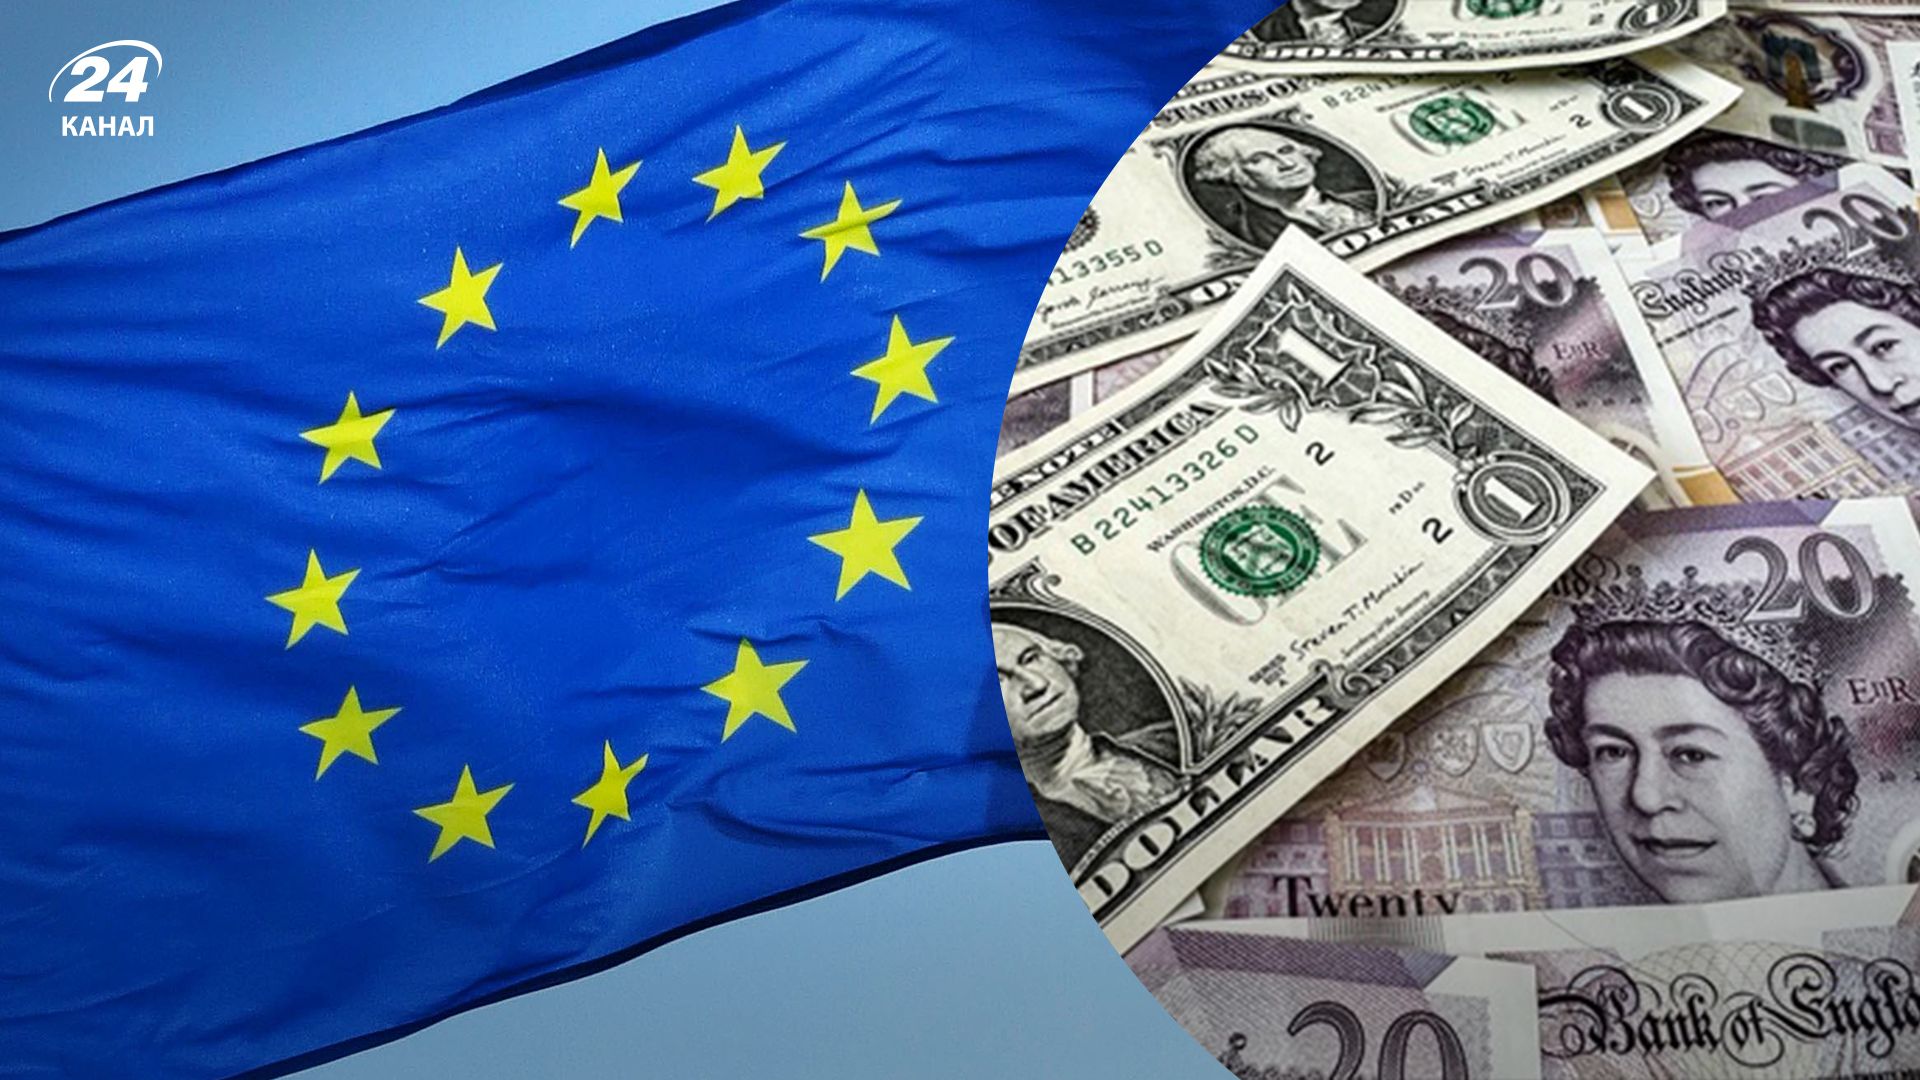 Лидеры ЕС согласились передать замороженные активы на помощь Украине